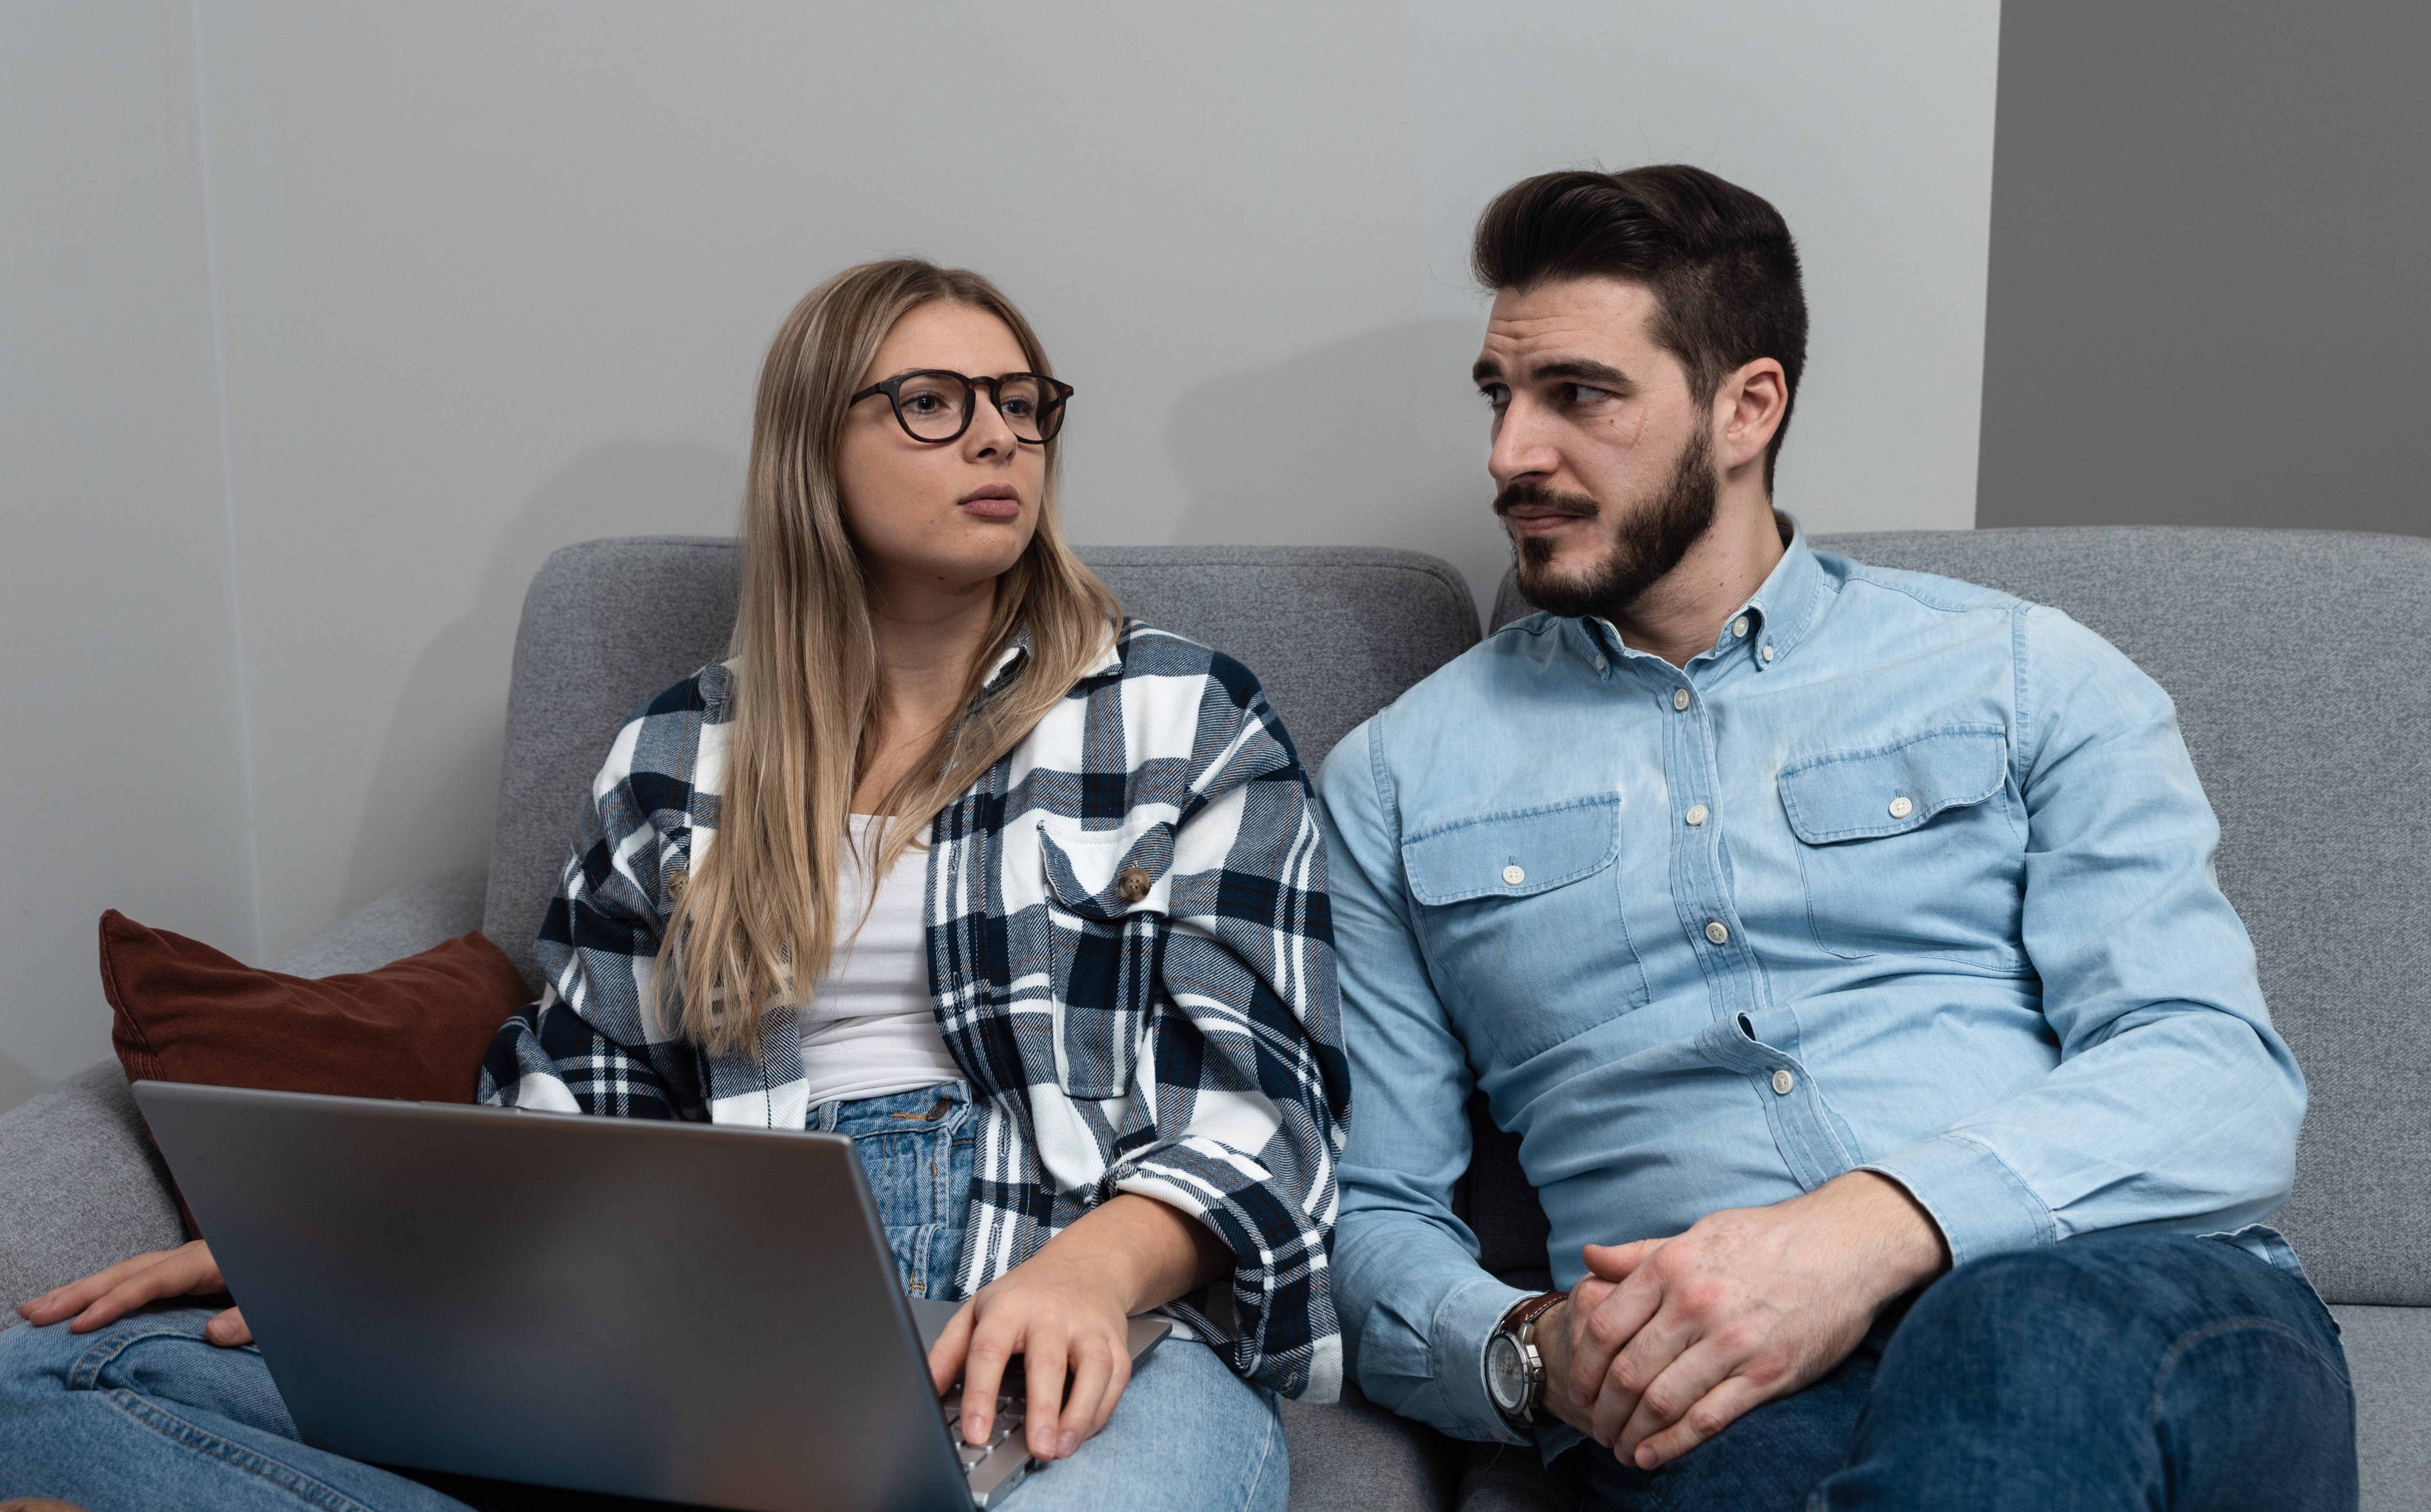 Ein Paar, das zusammensitzt und etwas bespricht, während ein Laptop auf dem Schoß der Frau liegt | Quelle: Shutterstock